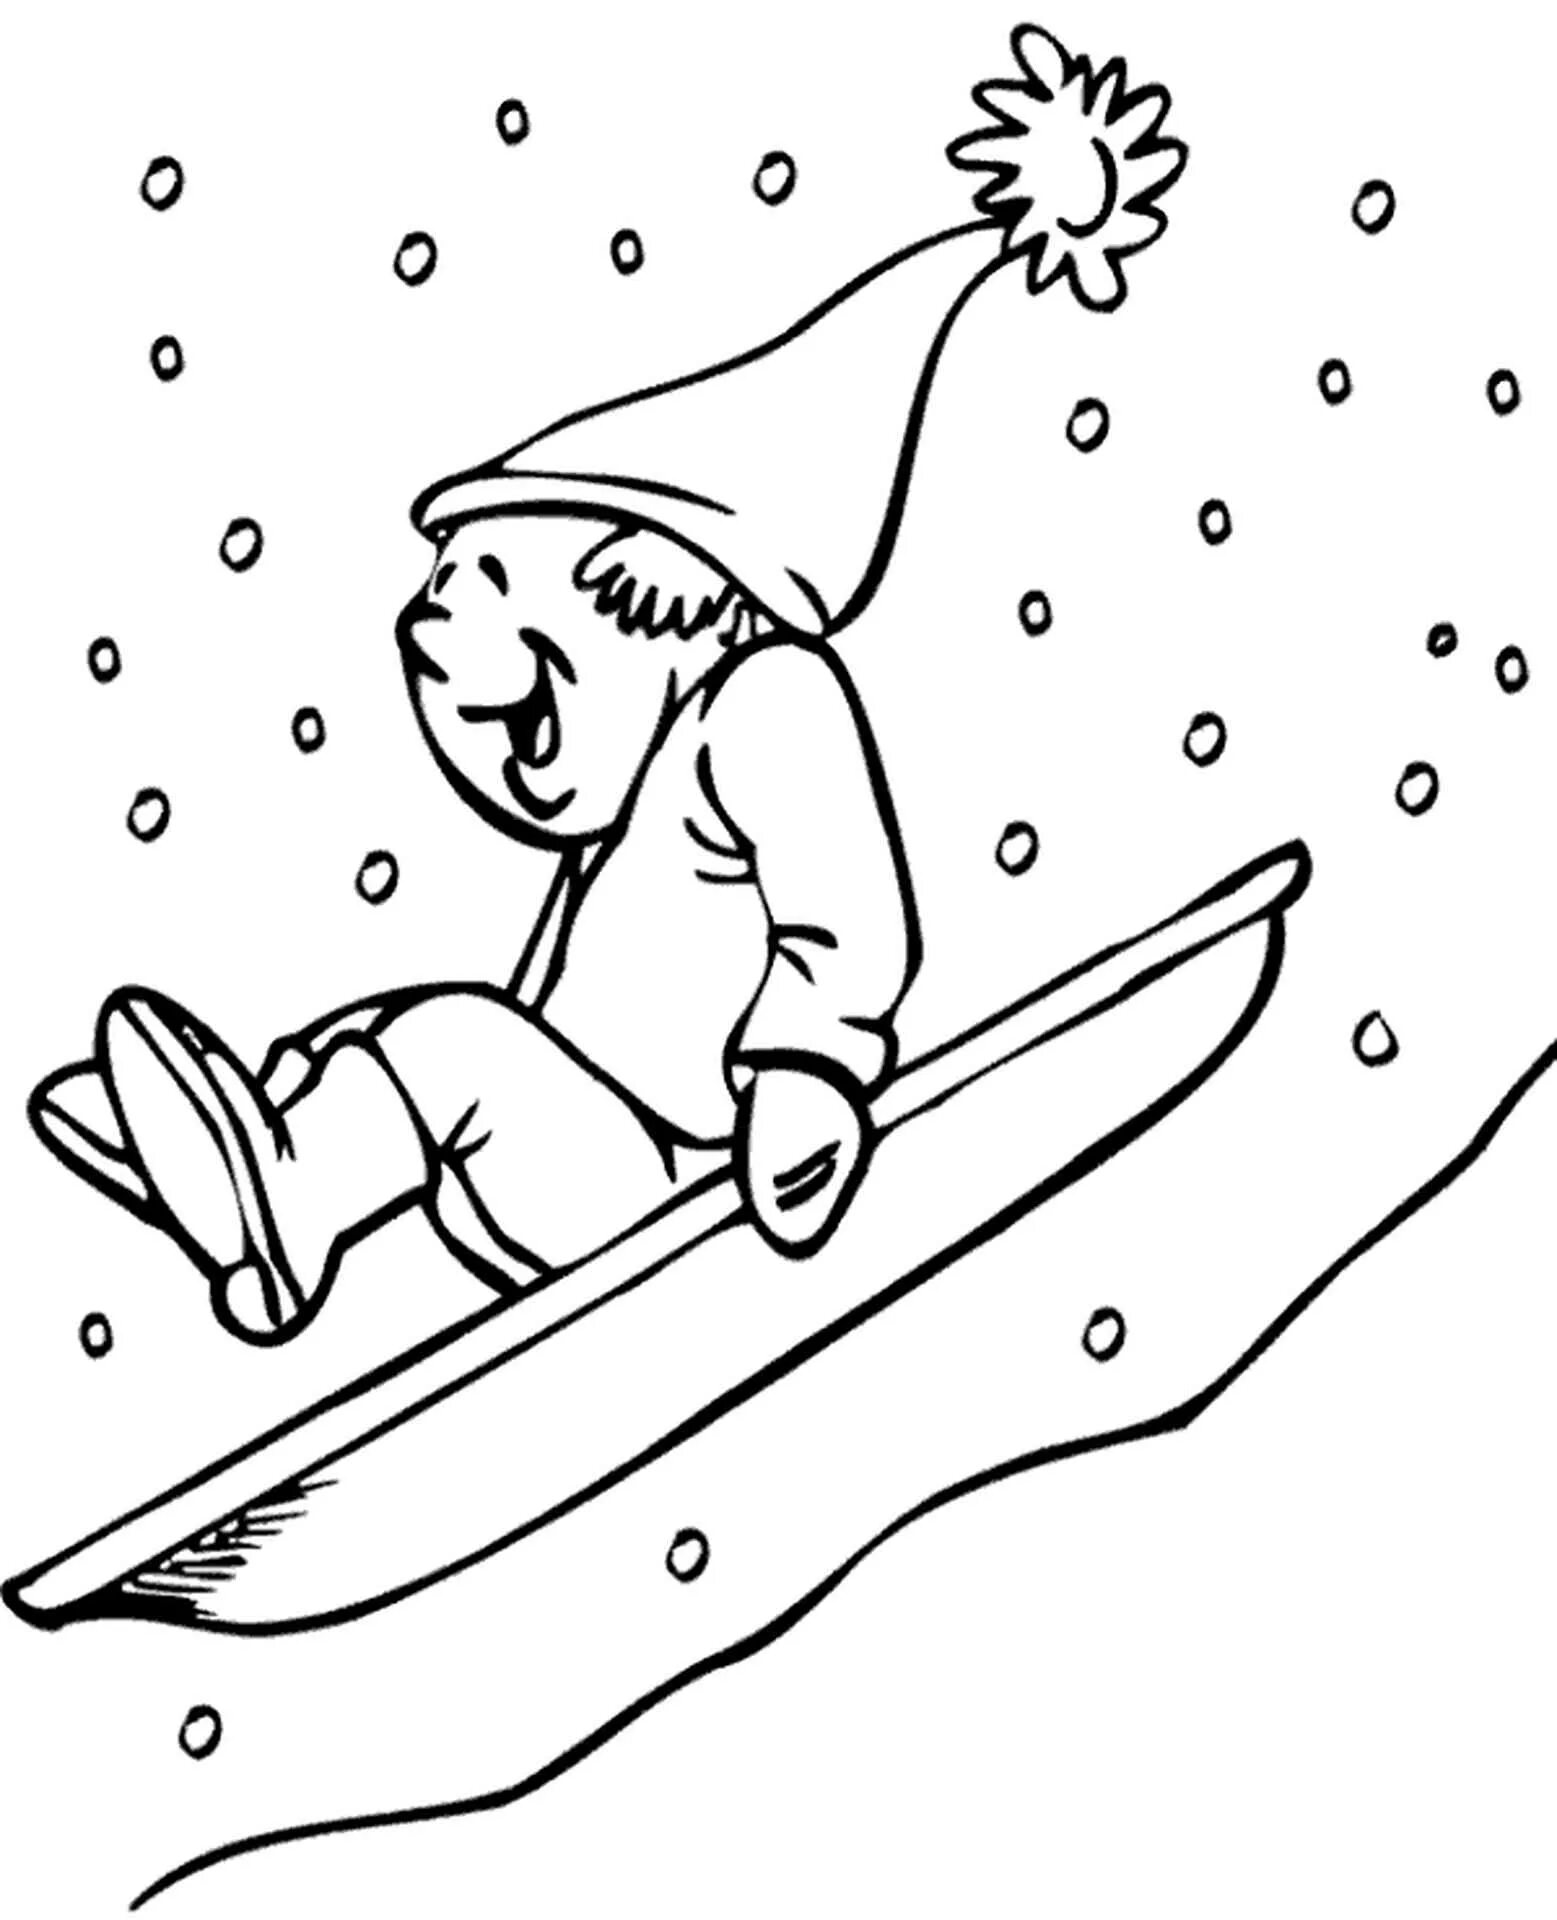 Snow slide for kids #1